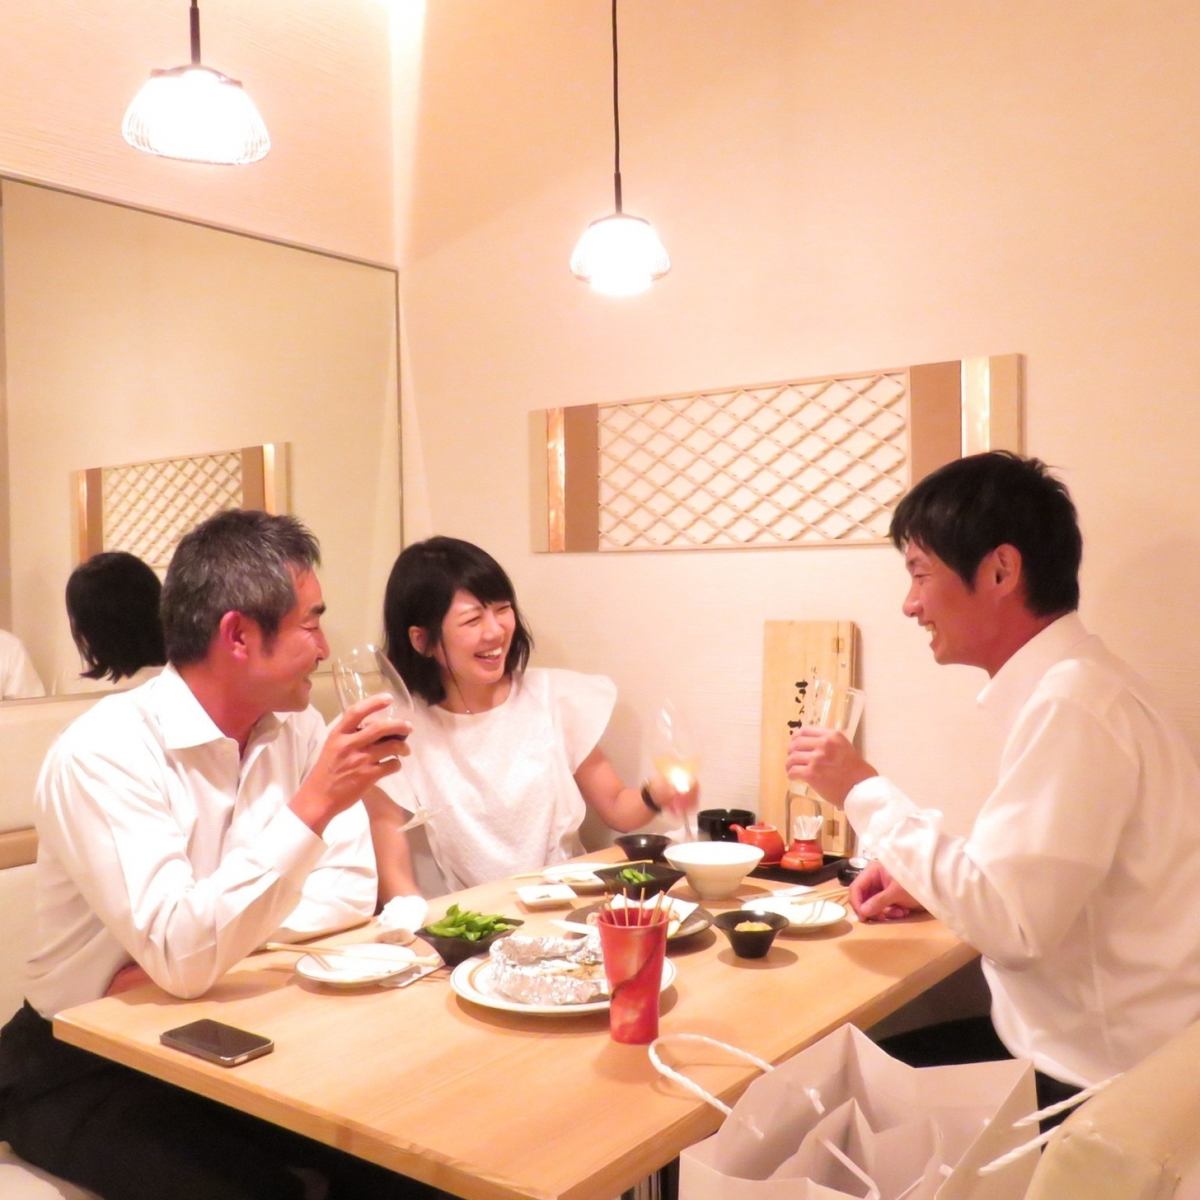 상질의 일본식 공간은 데이트에 최적.소중한 분과 행복의 한 때를 ....